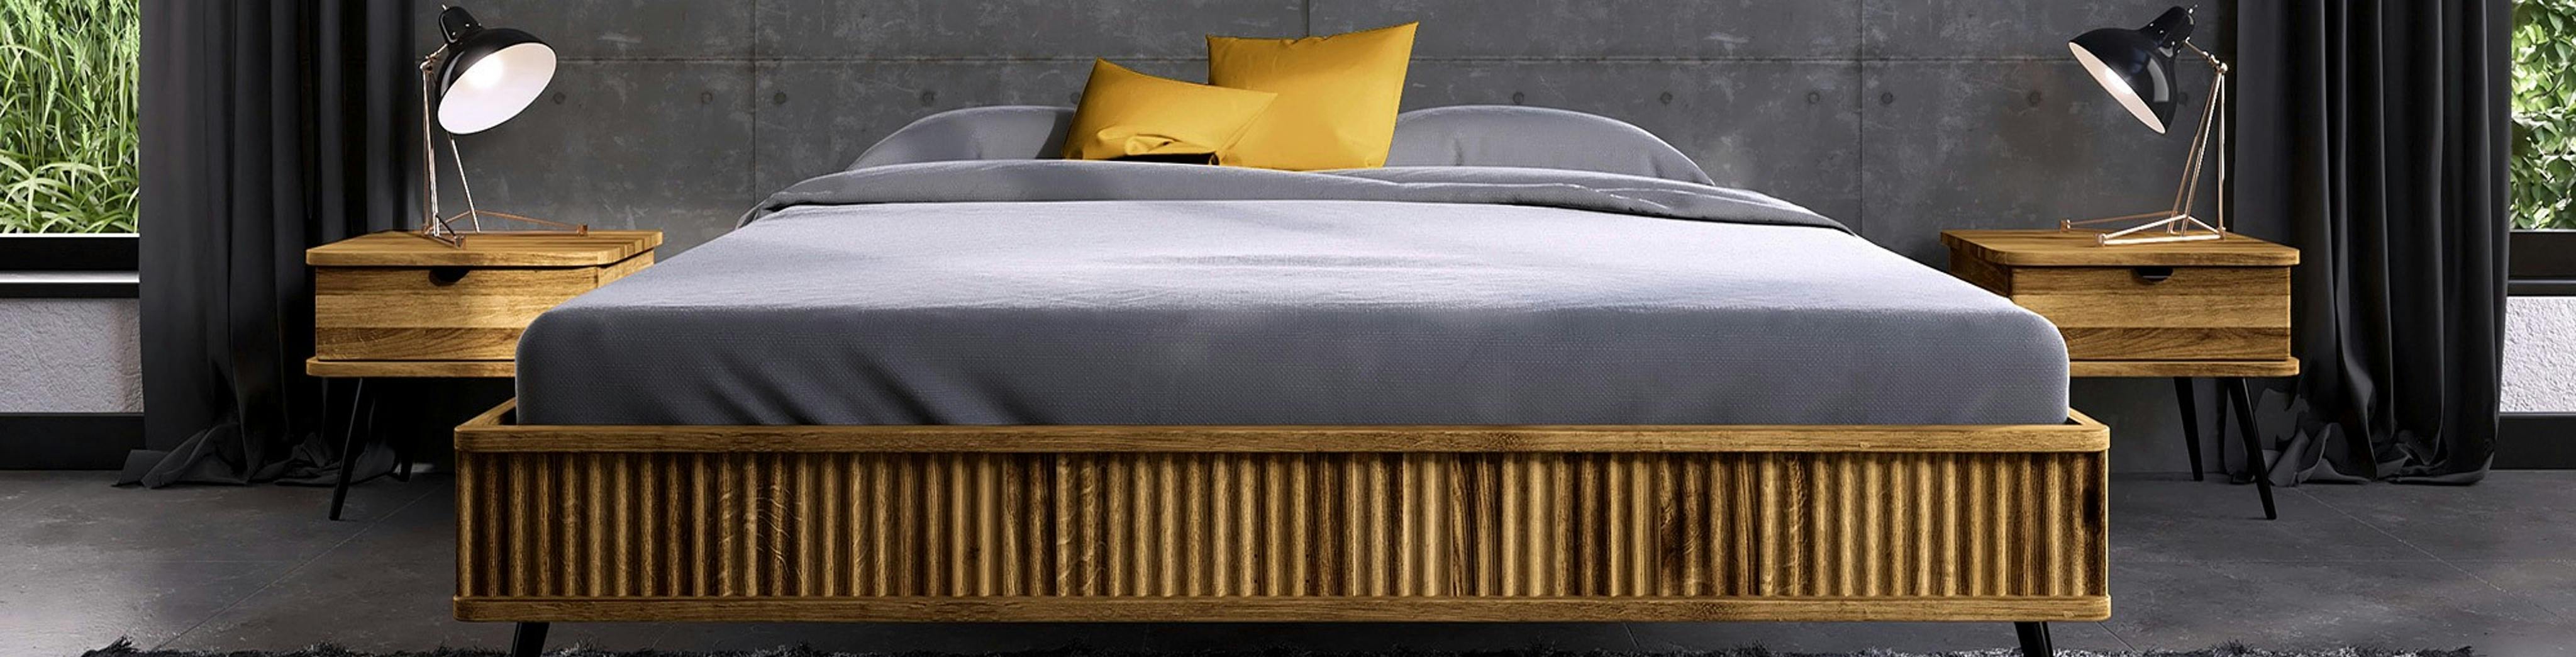 Lit futon en bois clair avec literie gris clair et jaune, avec 2 tables de chevet du même bois, dans une chambre au sol et murs sombres.